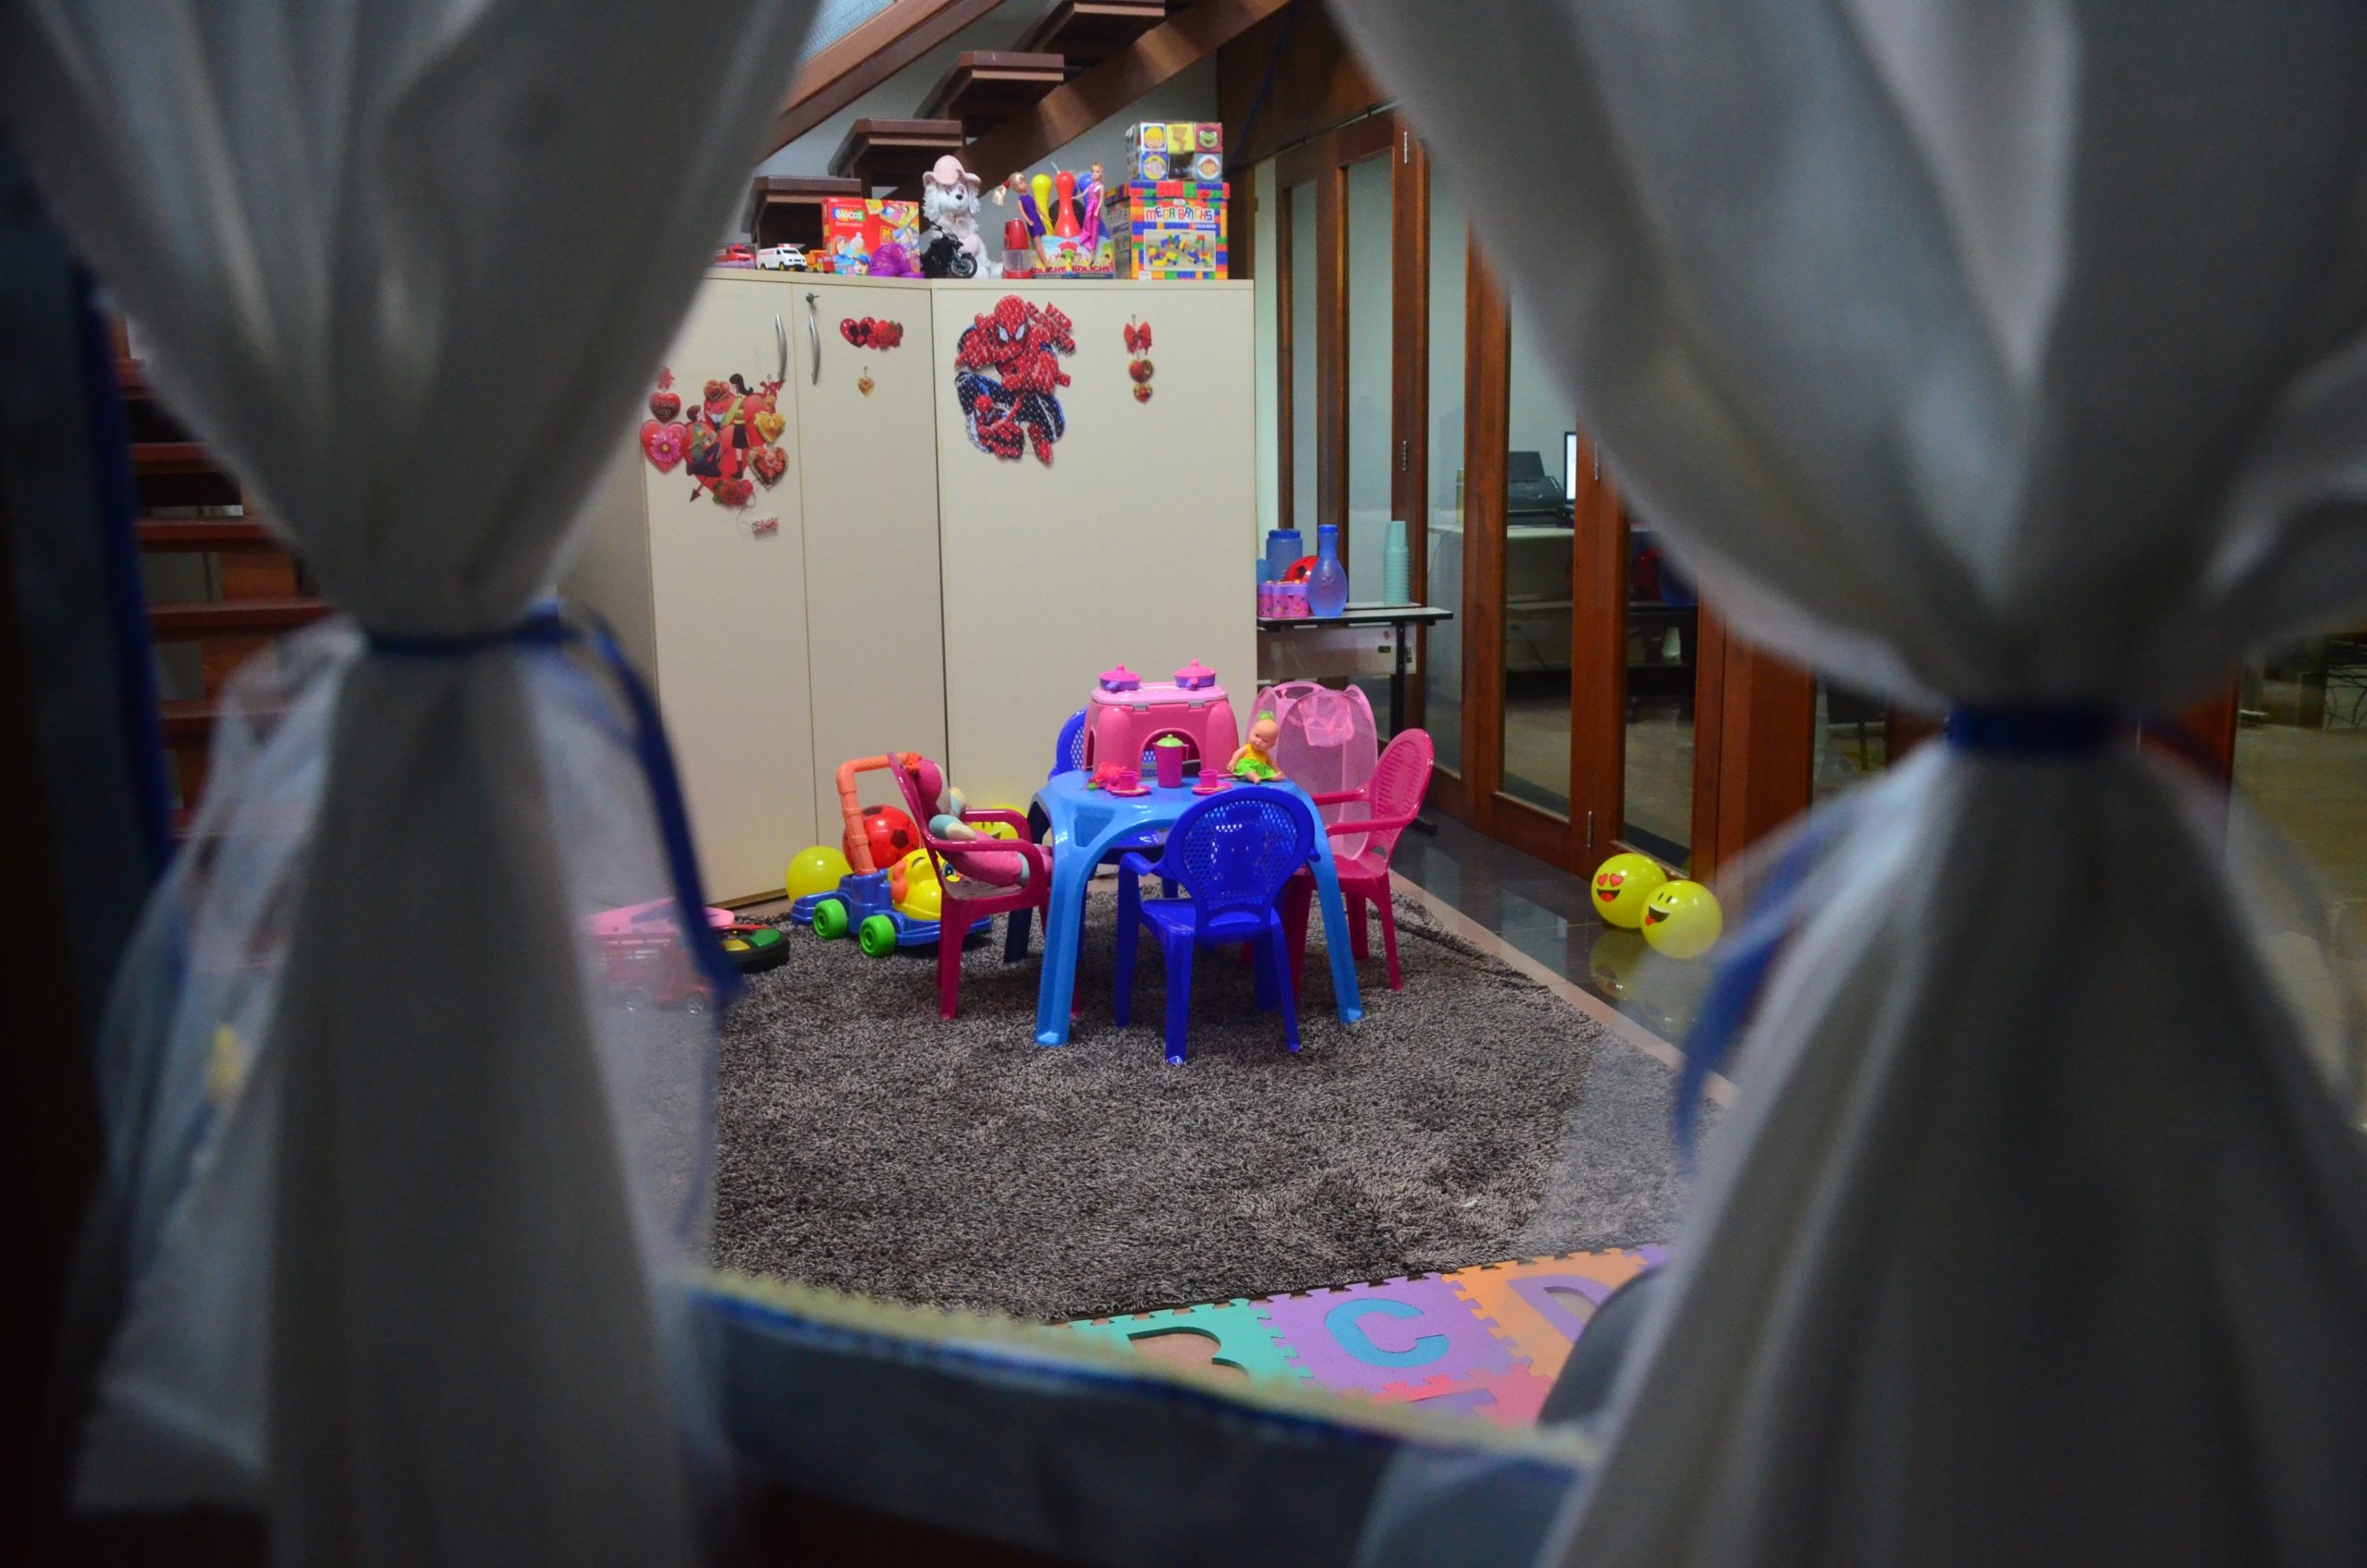 Foto da janela de uma casinha de brinquedo, mostrando mesas, armários, tapetes, o ambiente todo preparado para acolher crianças